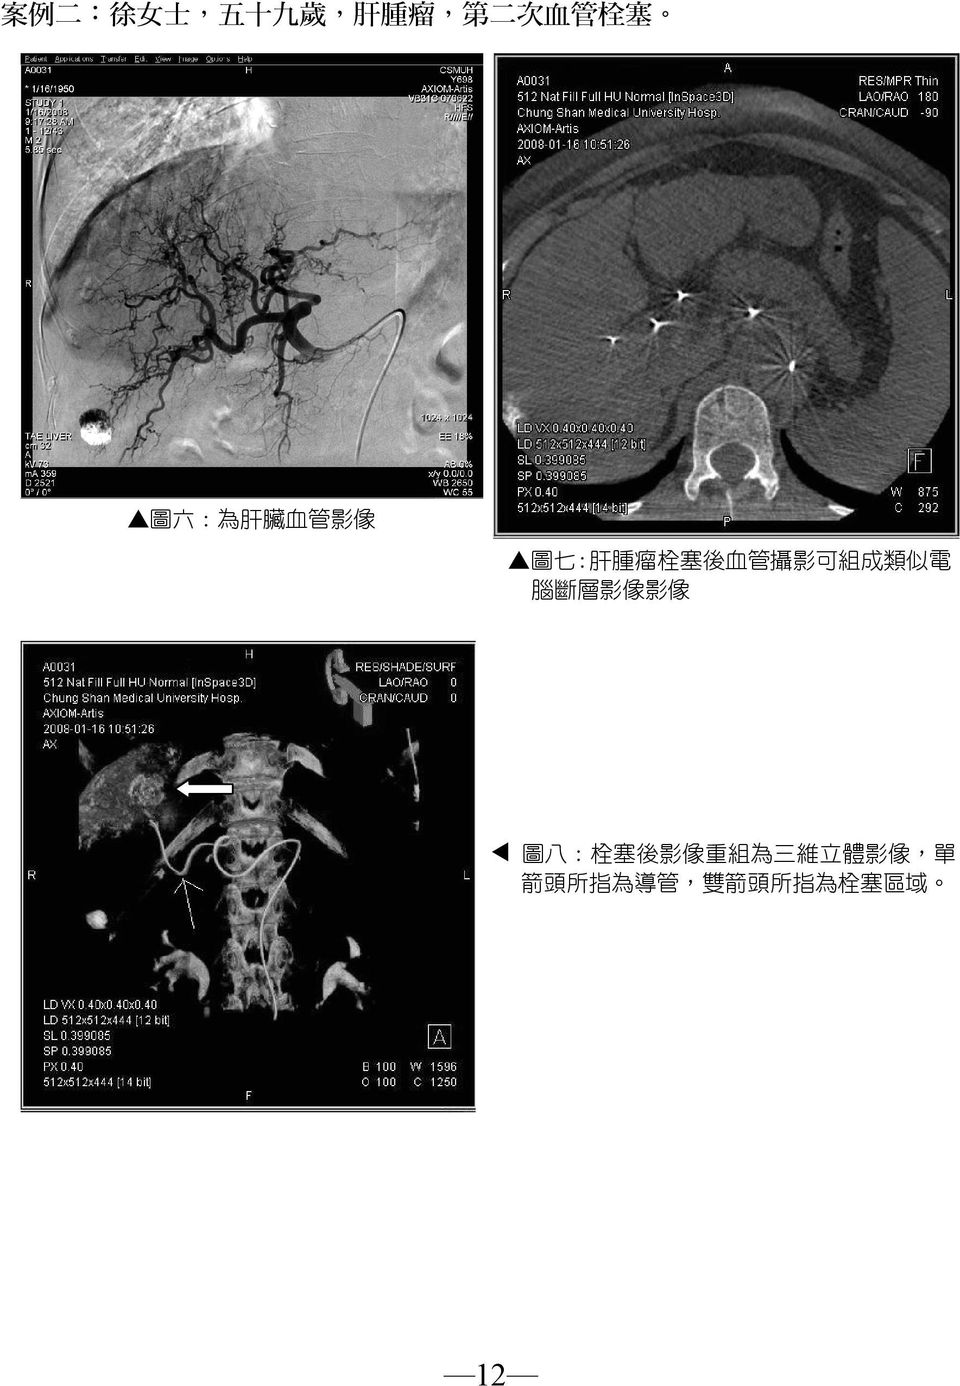 肝腫瘤栓塞後血管攝影可組成類似電 腦斷層影像影像 W